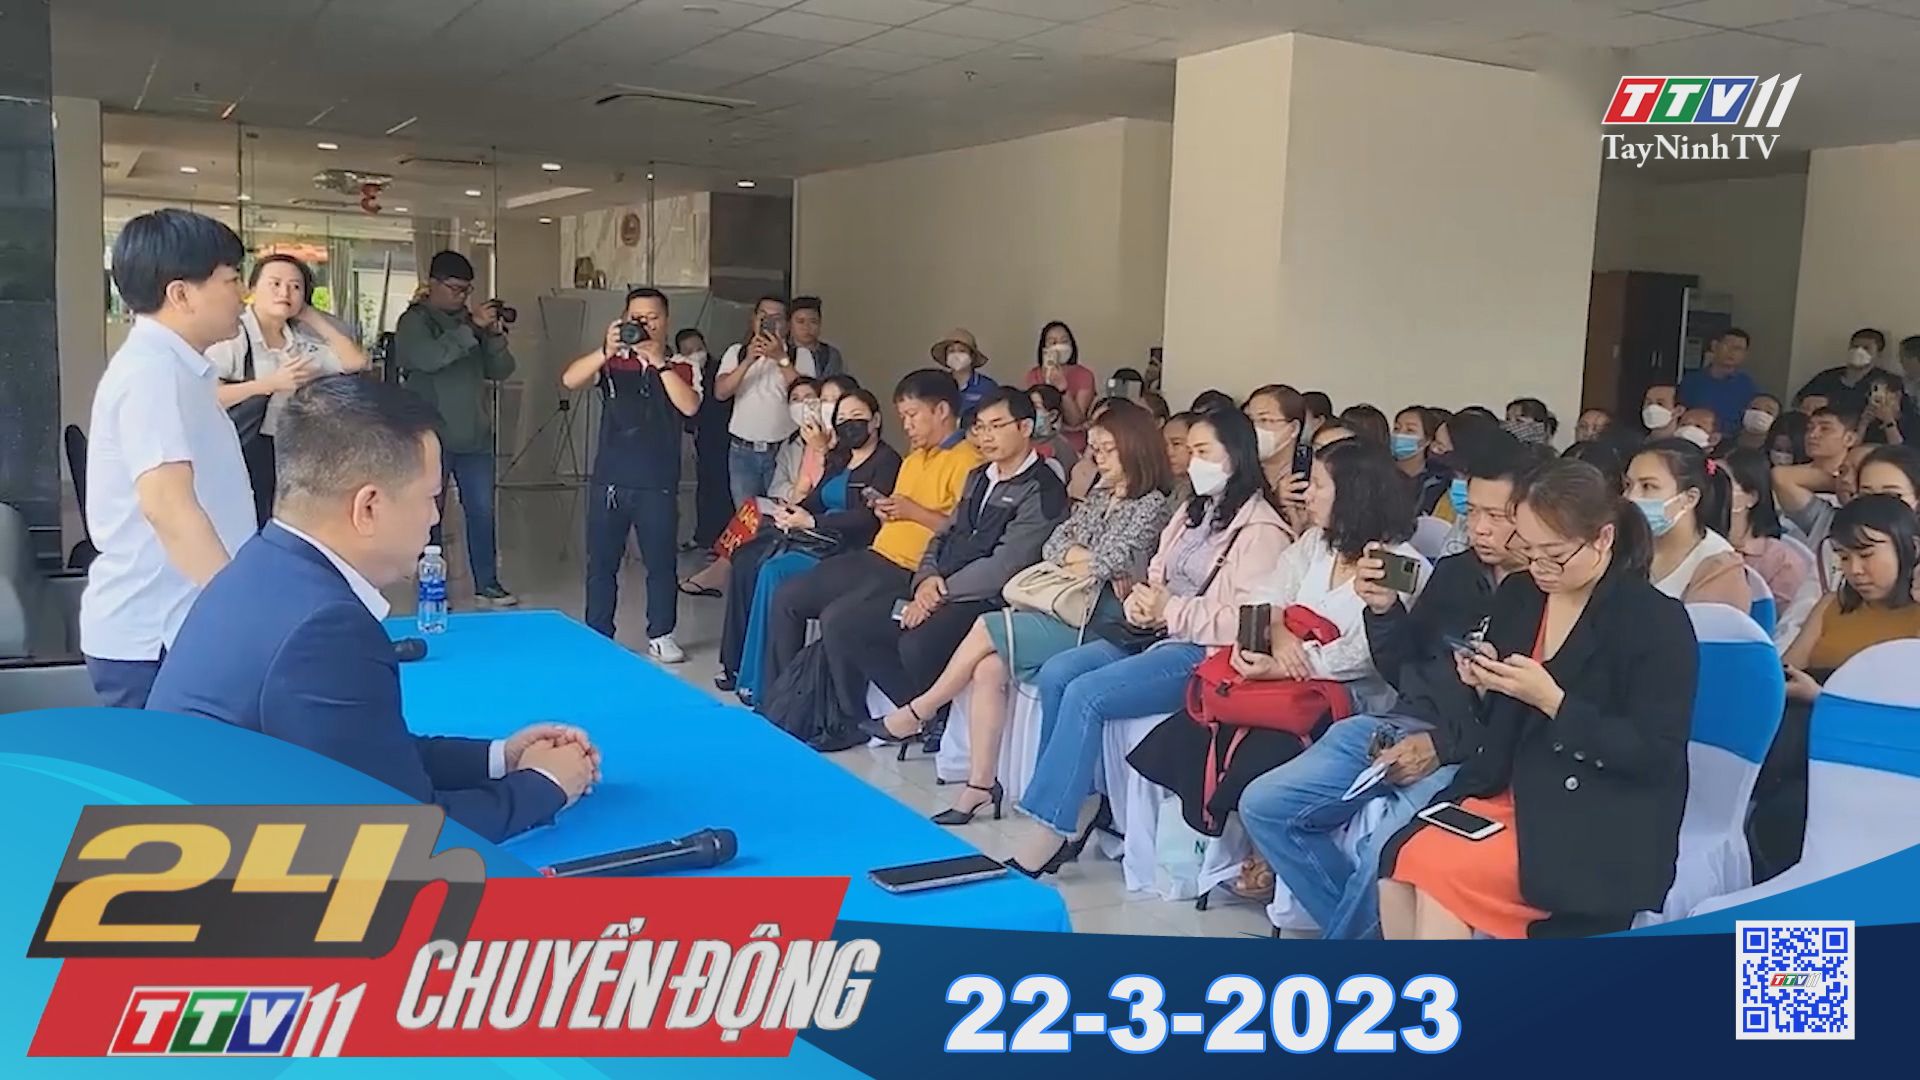 24h Chuyển động 22-3-2023 | Tin tức hôm nay | TayNinhTV